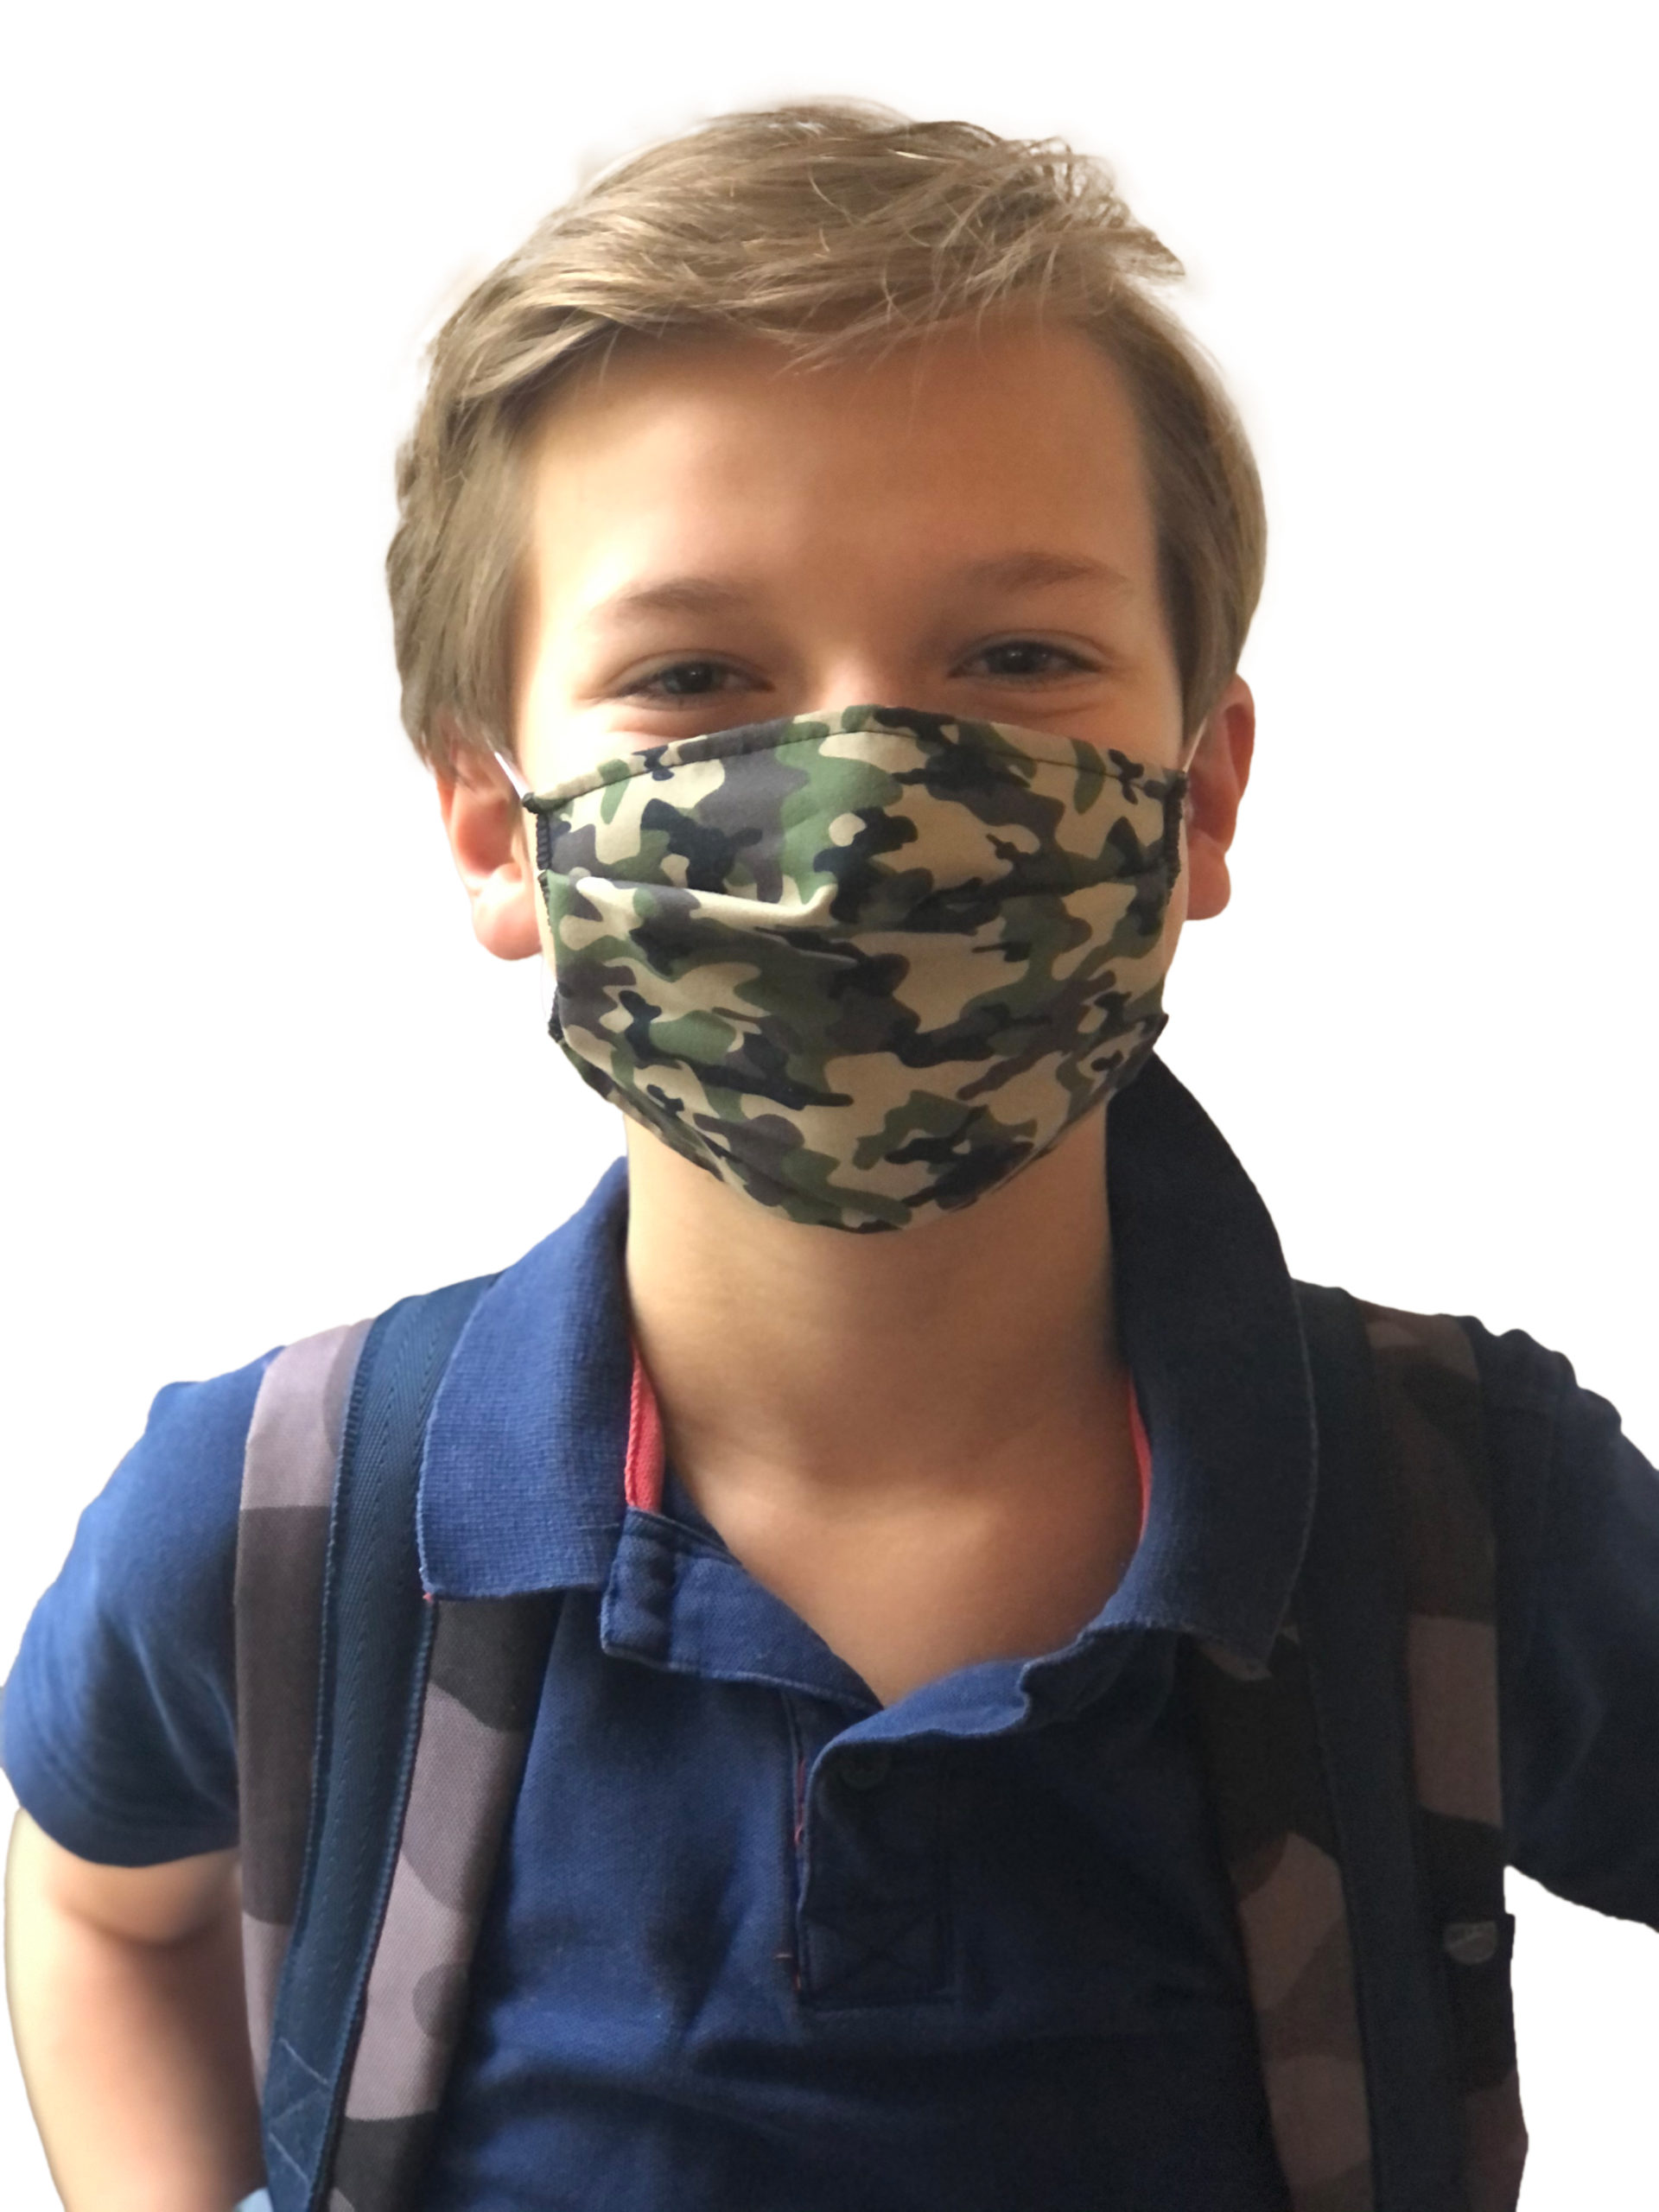 Masque tissus réutilisable et lavable enfant junior scolaire